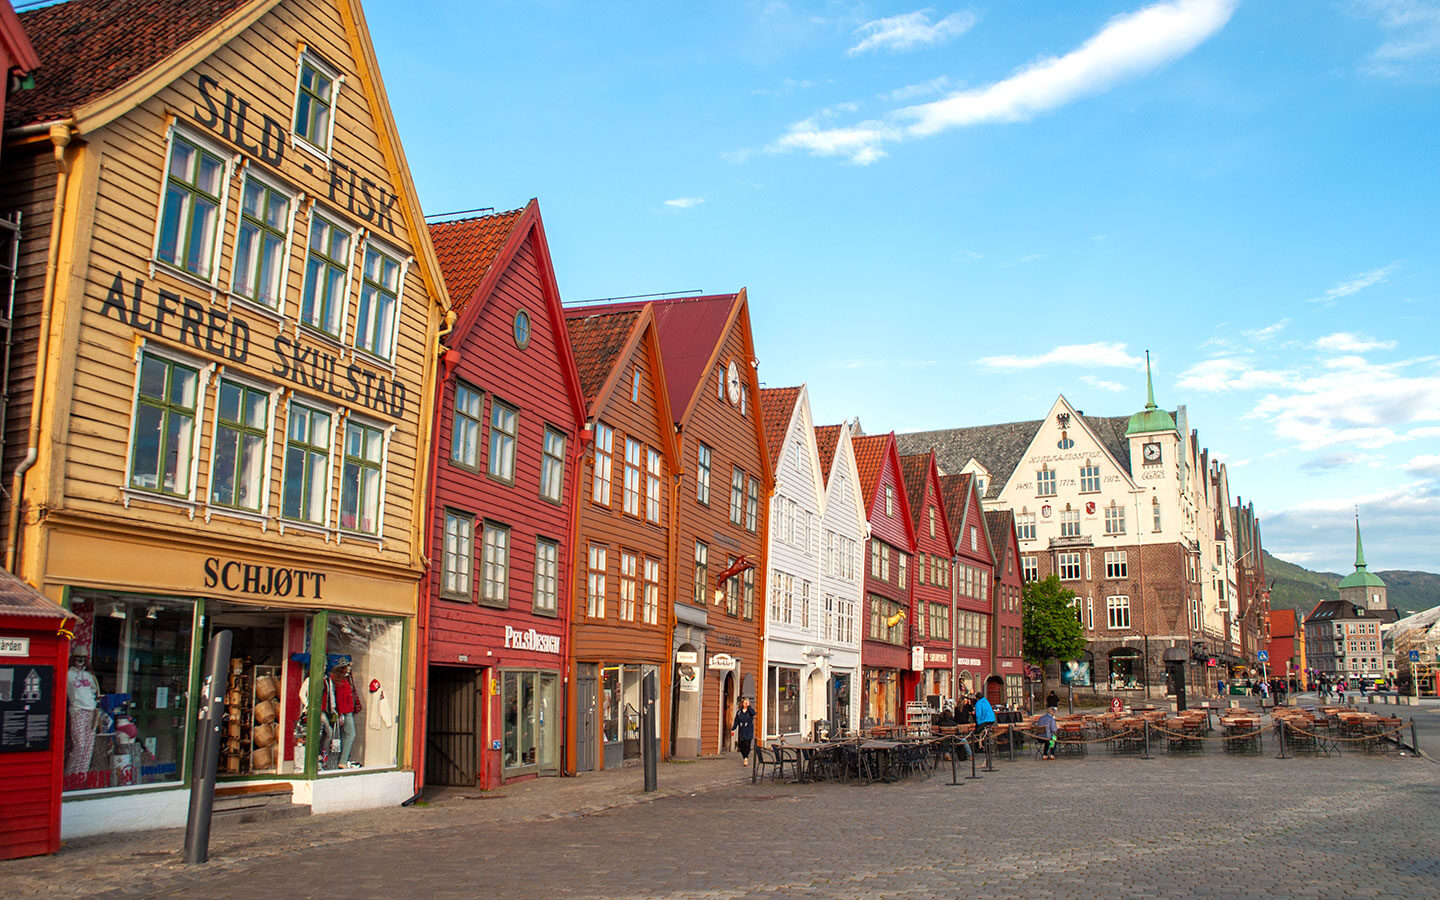 Historic Bryggen in Bergen